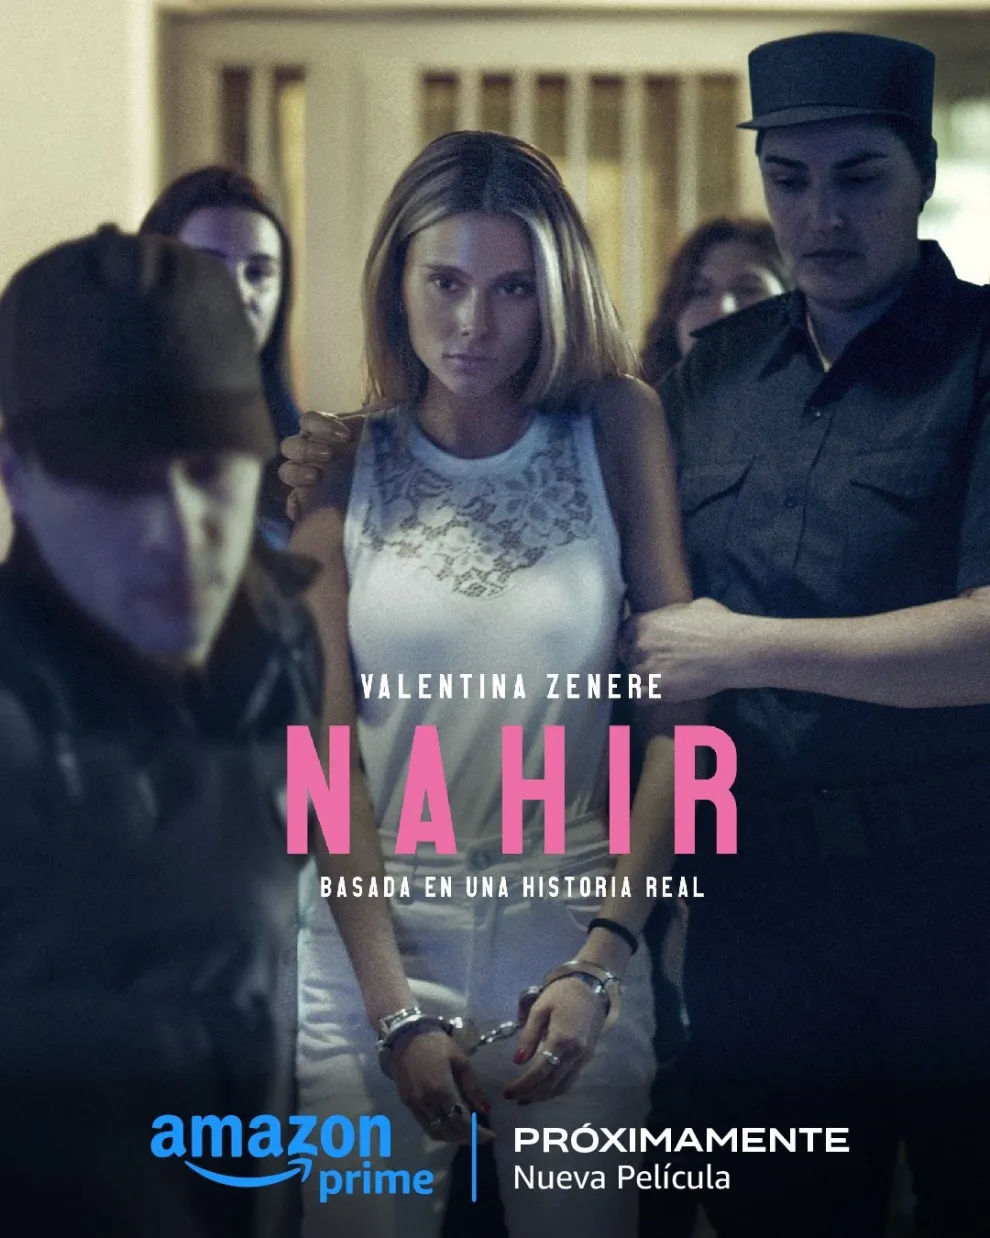 Poster de la película Nahir, de Prime Video.